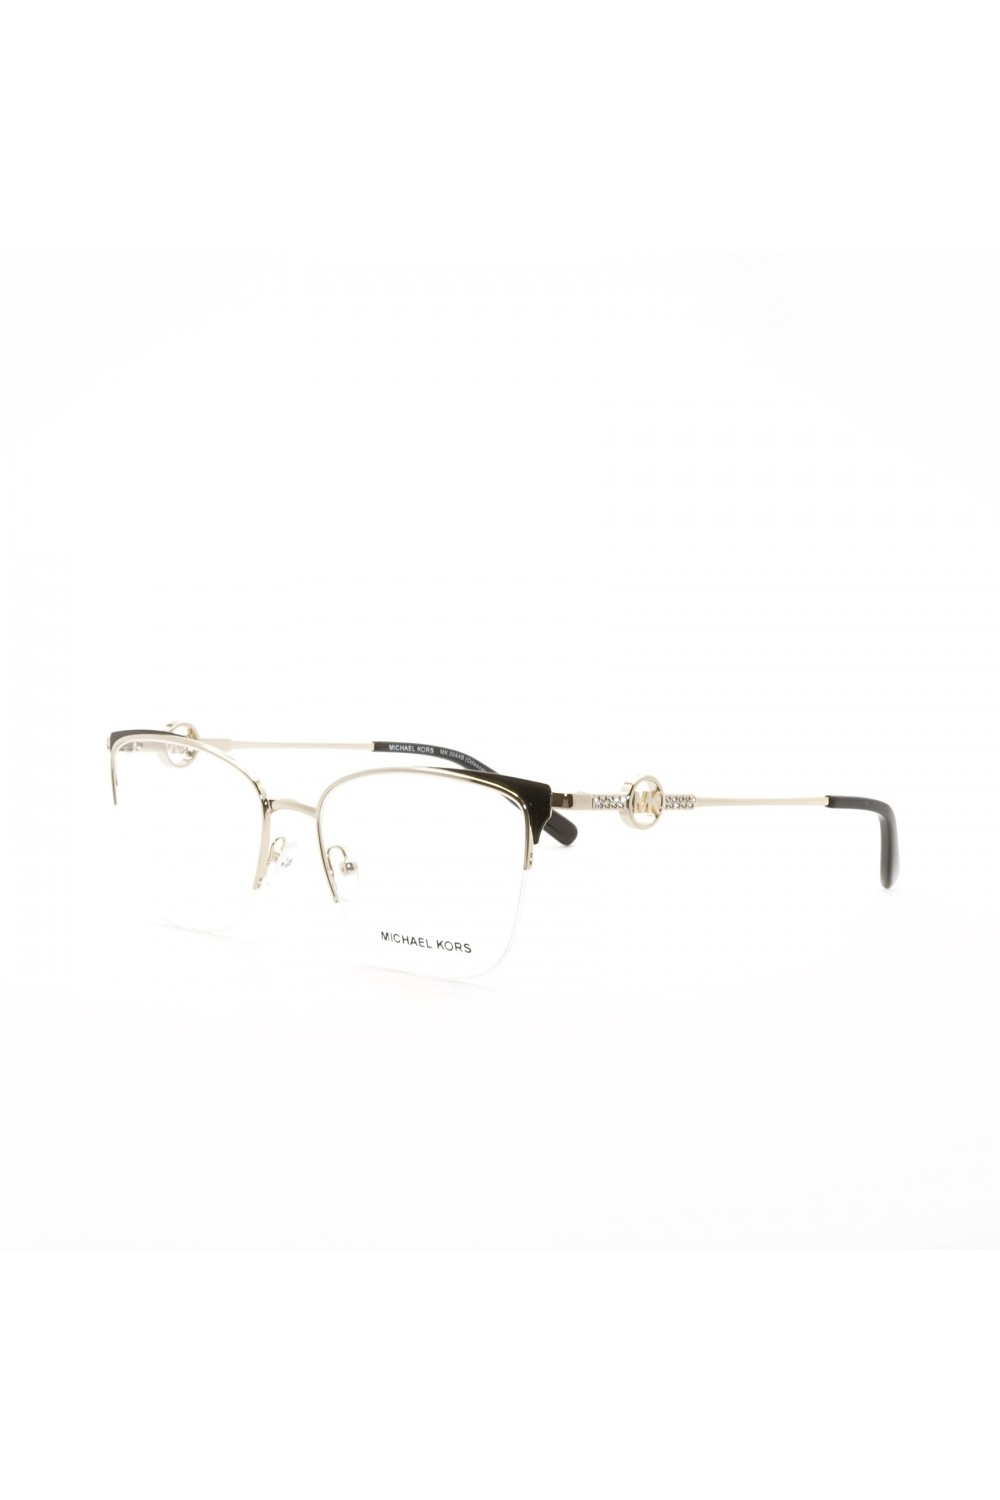 Michael Kors - Occhiali da vista in metallo squadrati per donna oro - MK3044B